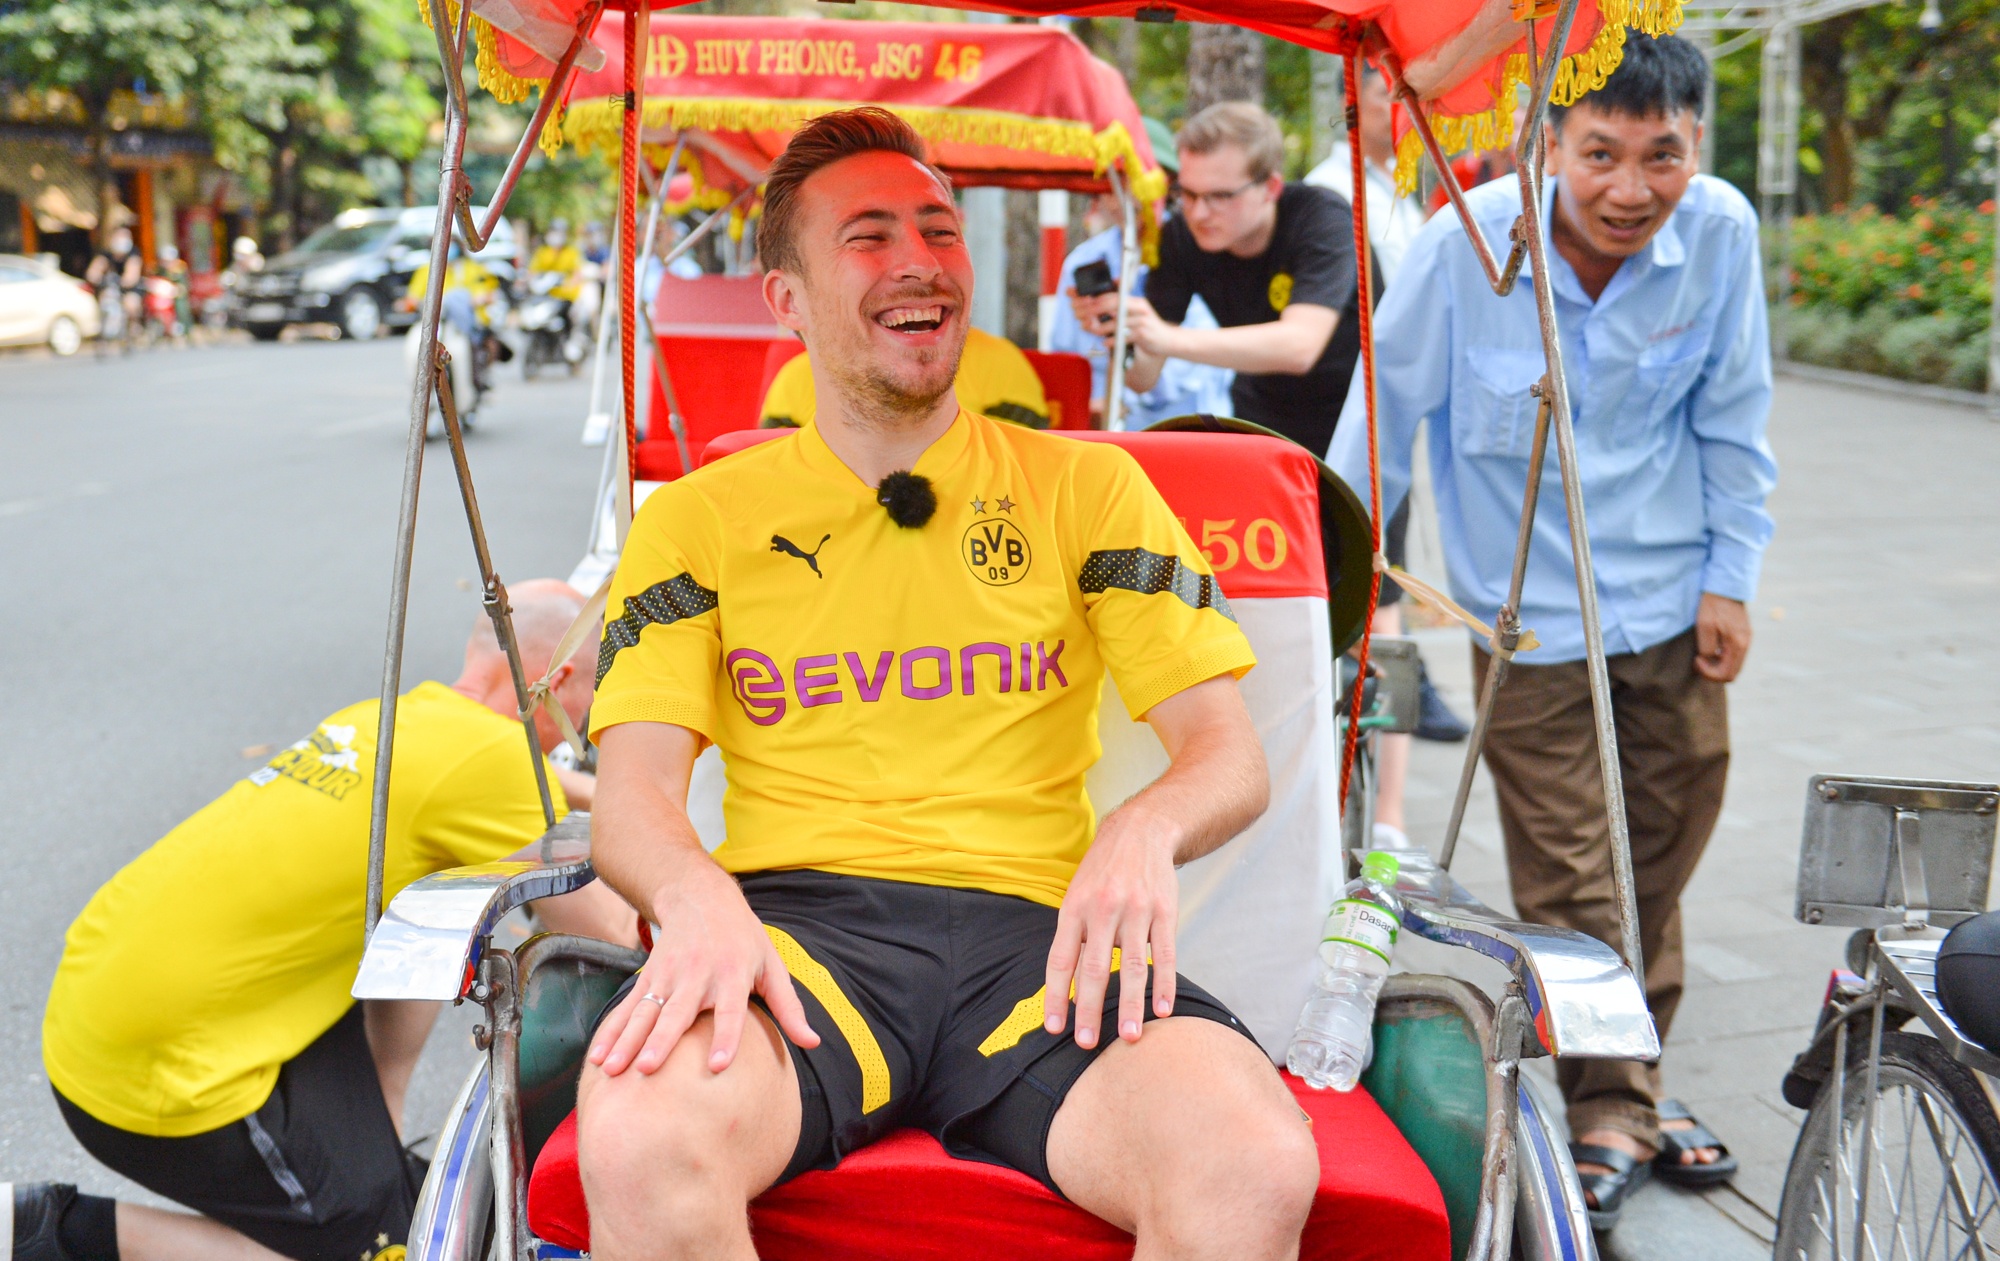 Cầu thủ Borussia Dortmund 'cười tít mắt' khi ngồi xích lô ngắm hồ Gươm-3